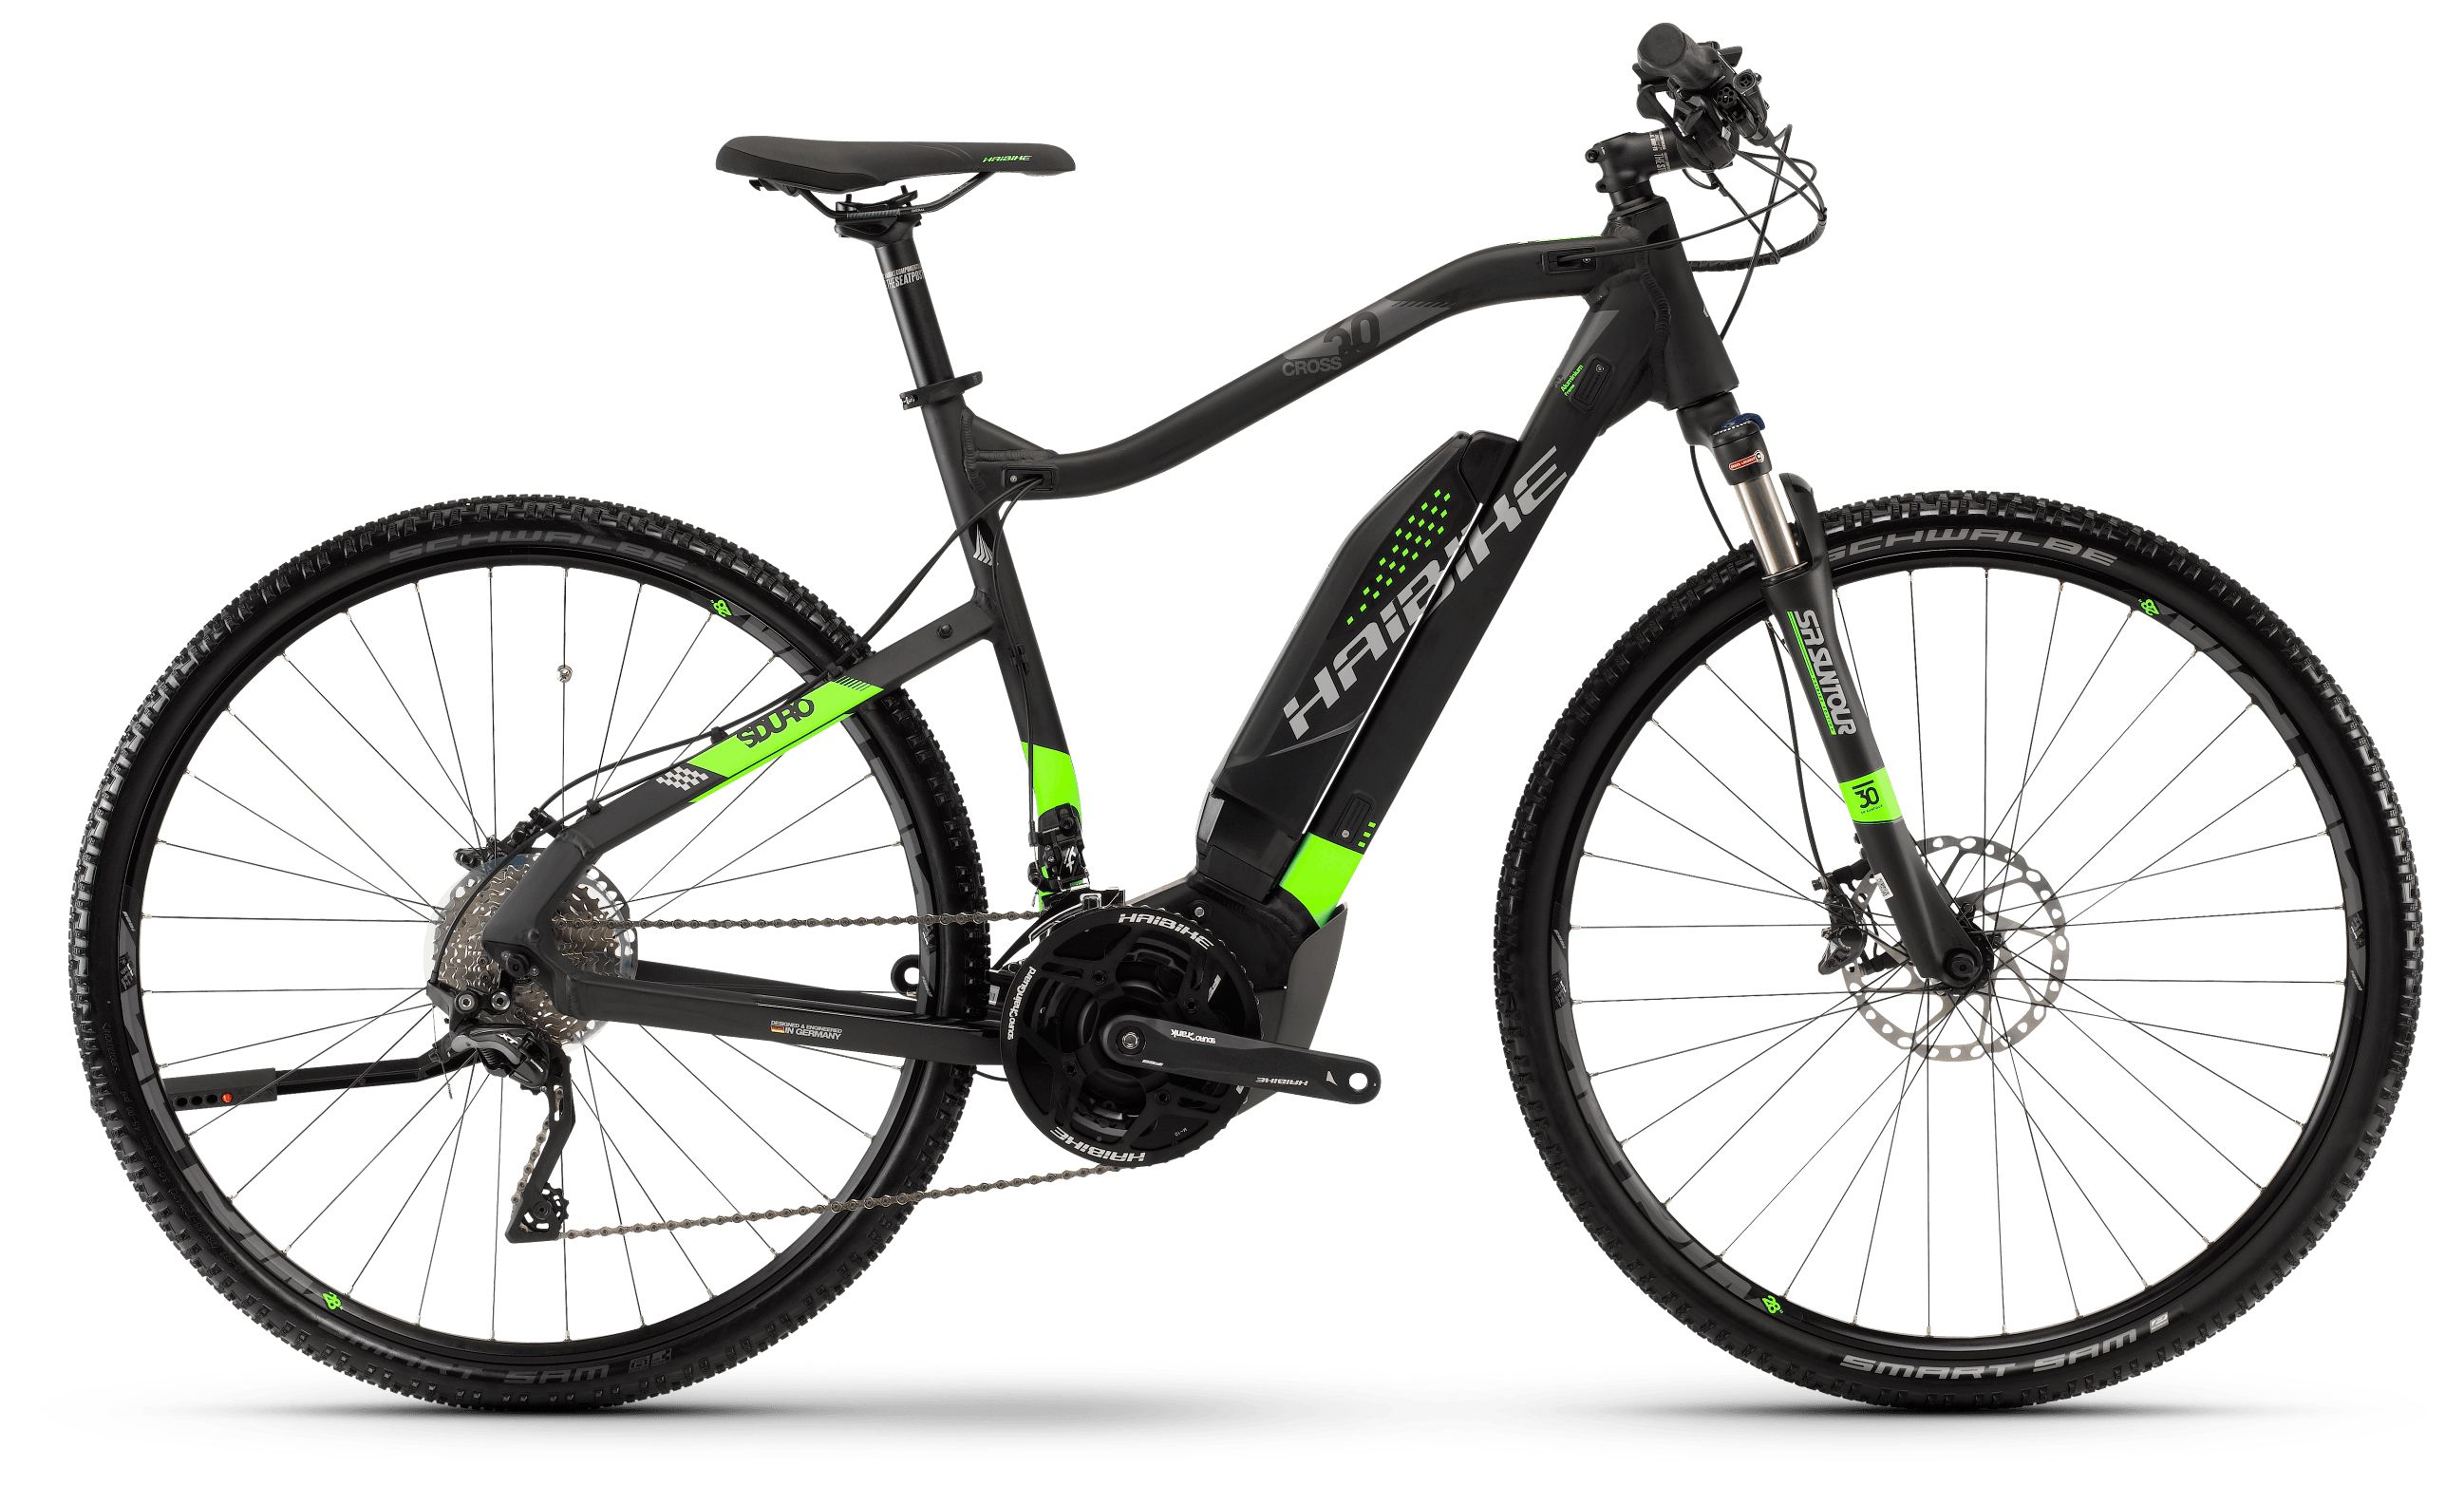  Отзывы о Электровелосипеде Haibike Sduro Cross 6.0 men 500Wh 20s XT 2018